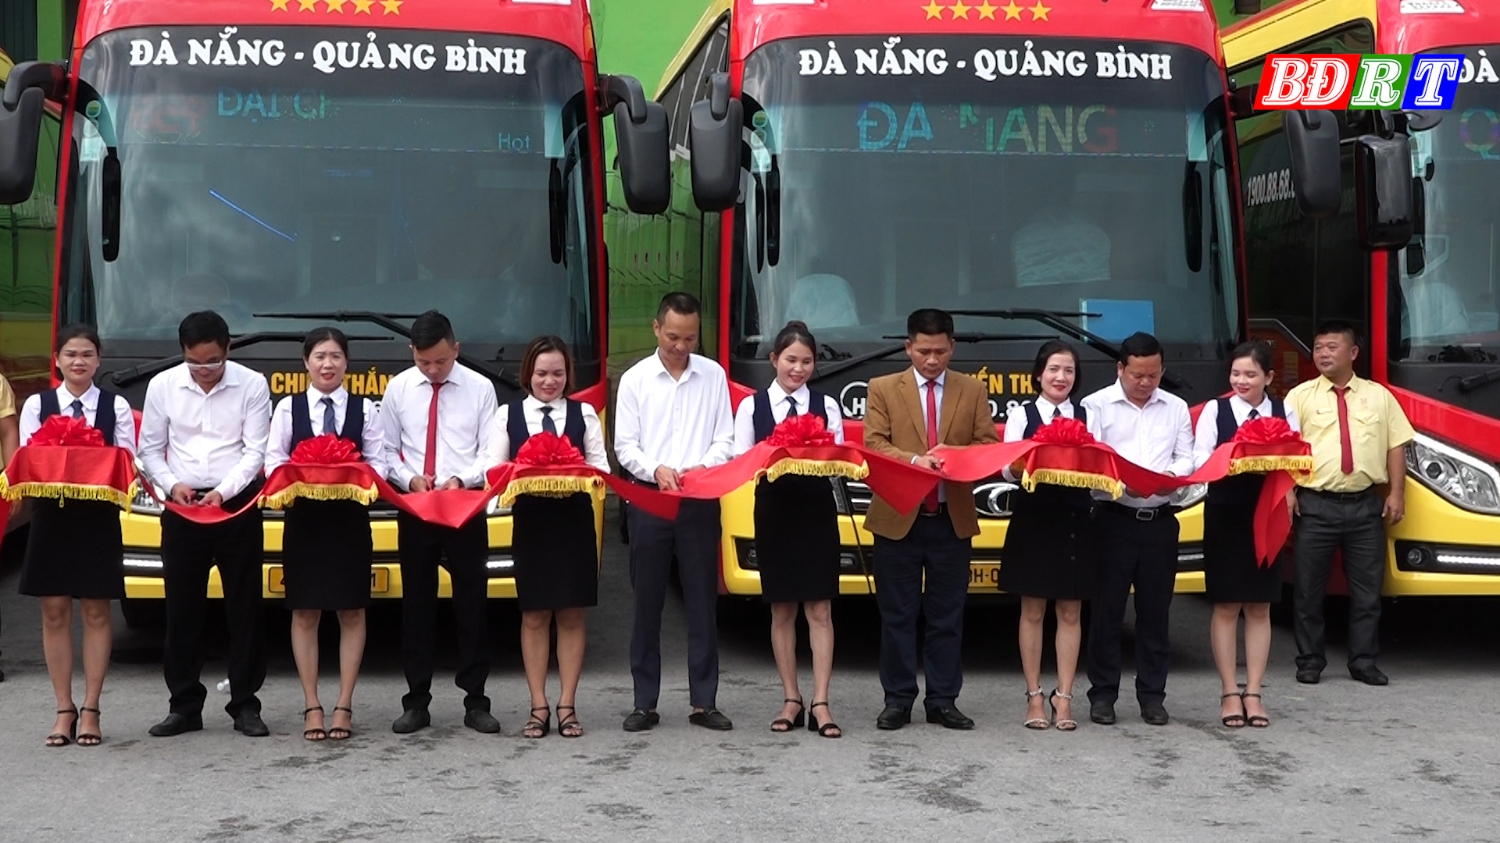 Các đại biểu tham dự đã cùng nhau cắt băng khánh thành chúc mừng tuyến xe khách chất lượng cao 2 chiều Đà Nẵng Quảng Bình đi vào hoạt động